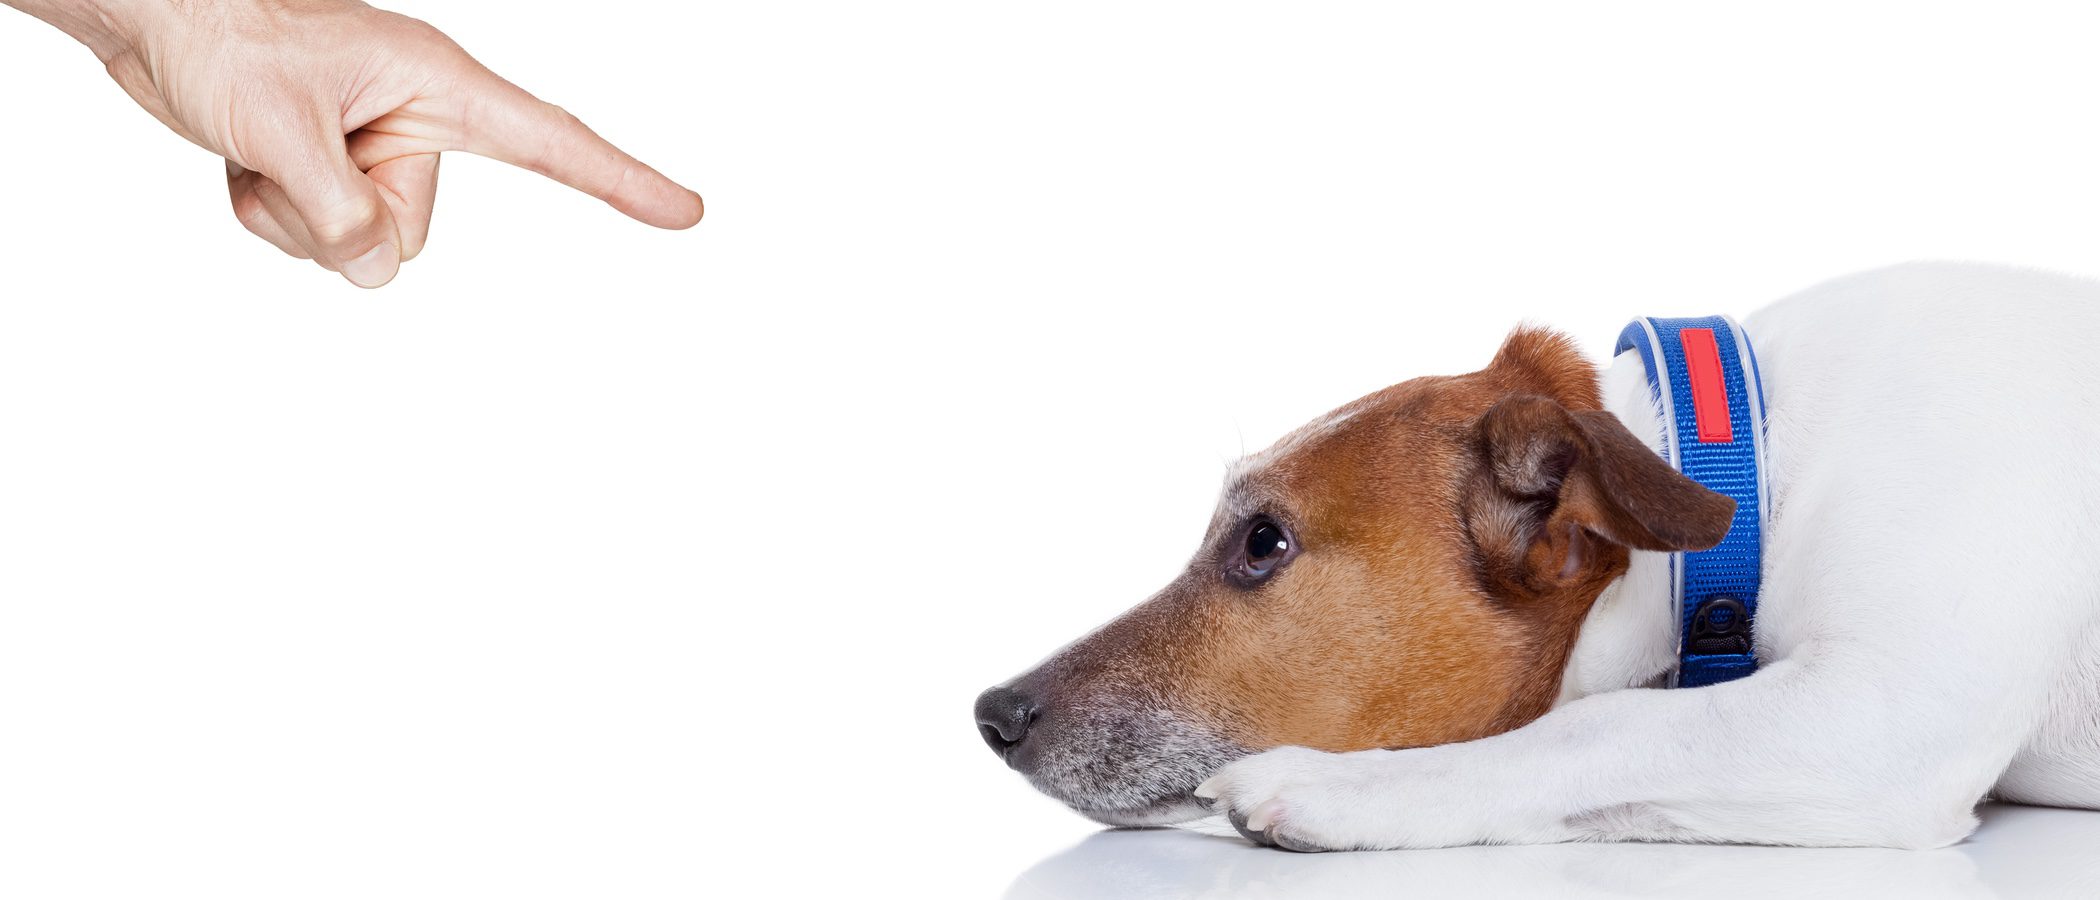 Educar a tu perro: ¿Castigo o refuerzo negativo?